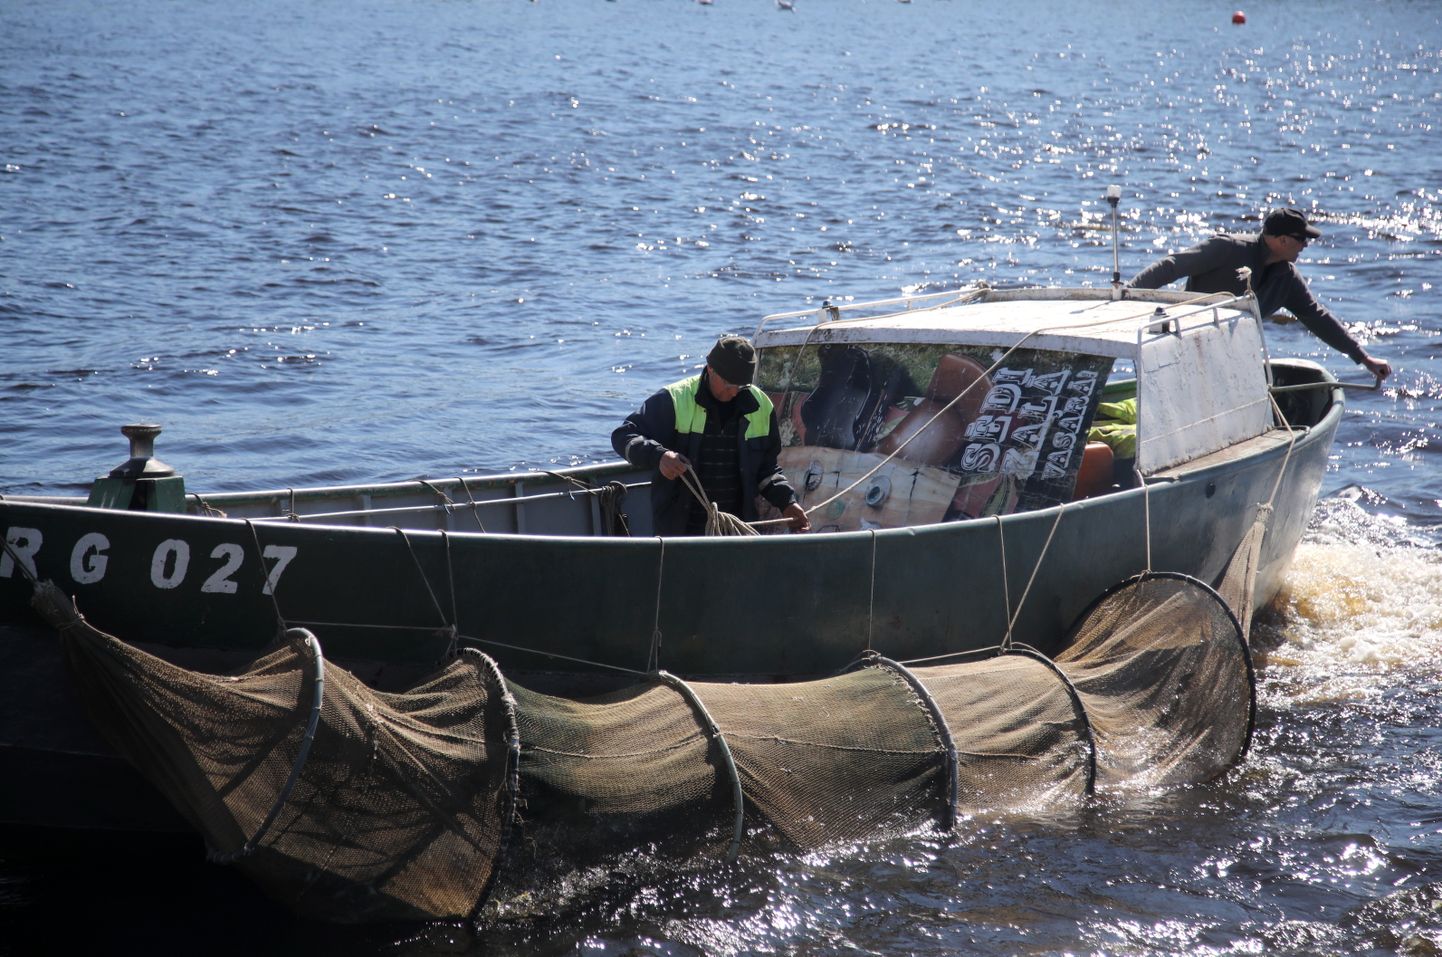 Valsts zinātniskā institūta "BIOR" zivju audzētavā audzētie lašu un taimiņu mazuļi tiek ielaisti Daugavā netālu no Ziemeļu mola bākas pēc AS "Latvenergo" pasūtījuma, tādējādi kompensējot zivju resursiem nodarīto kaitējumu no pašu darbības.